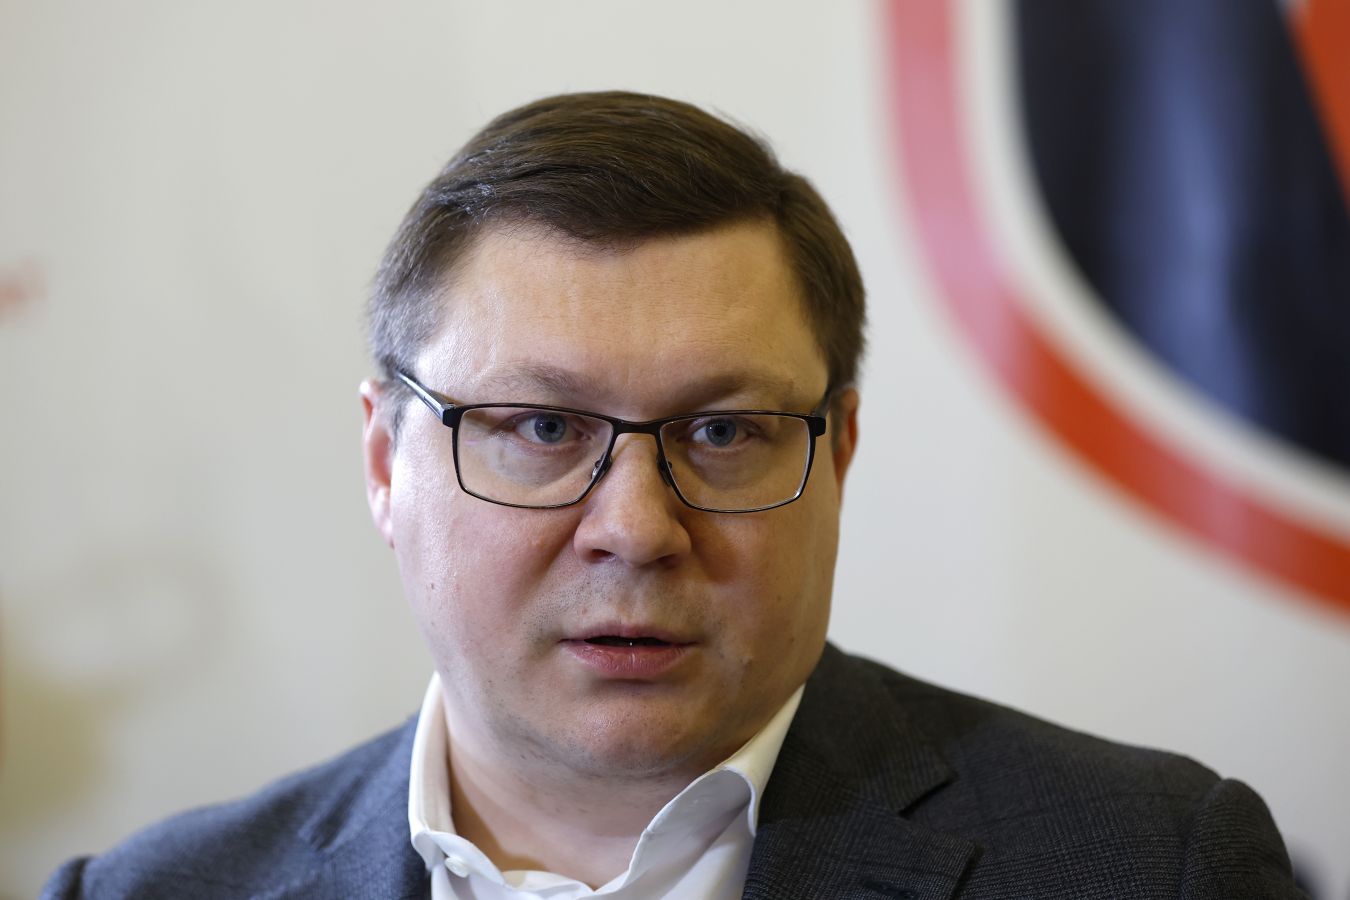 Митрофанов ответил на вопрос о возвращении российских клубов на международную арену